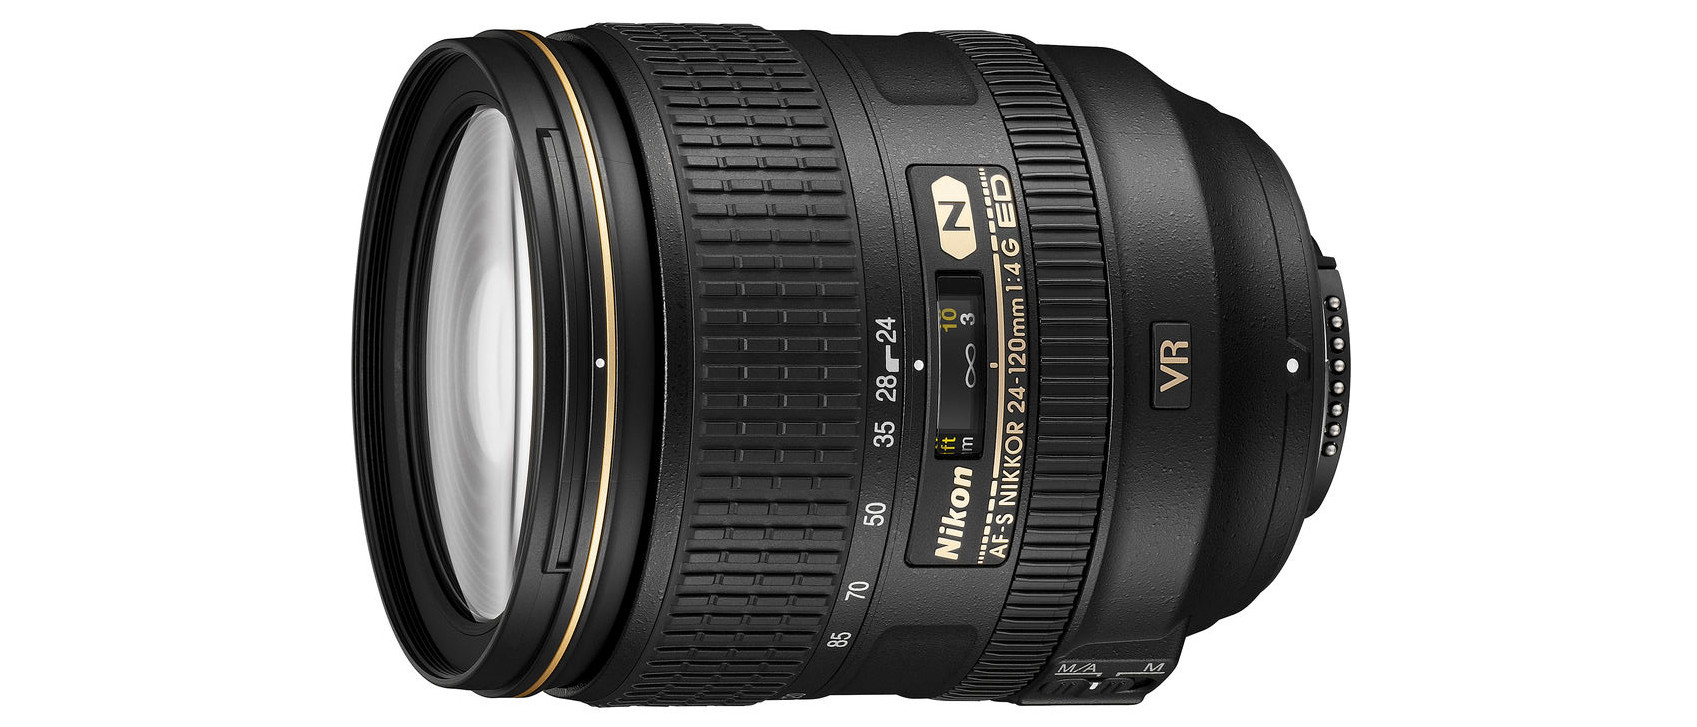 Nikon AF-S 24-120mm f/4G ED VR review | Digital Camera World